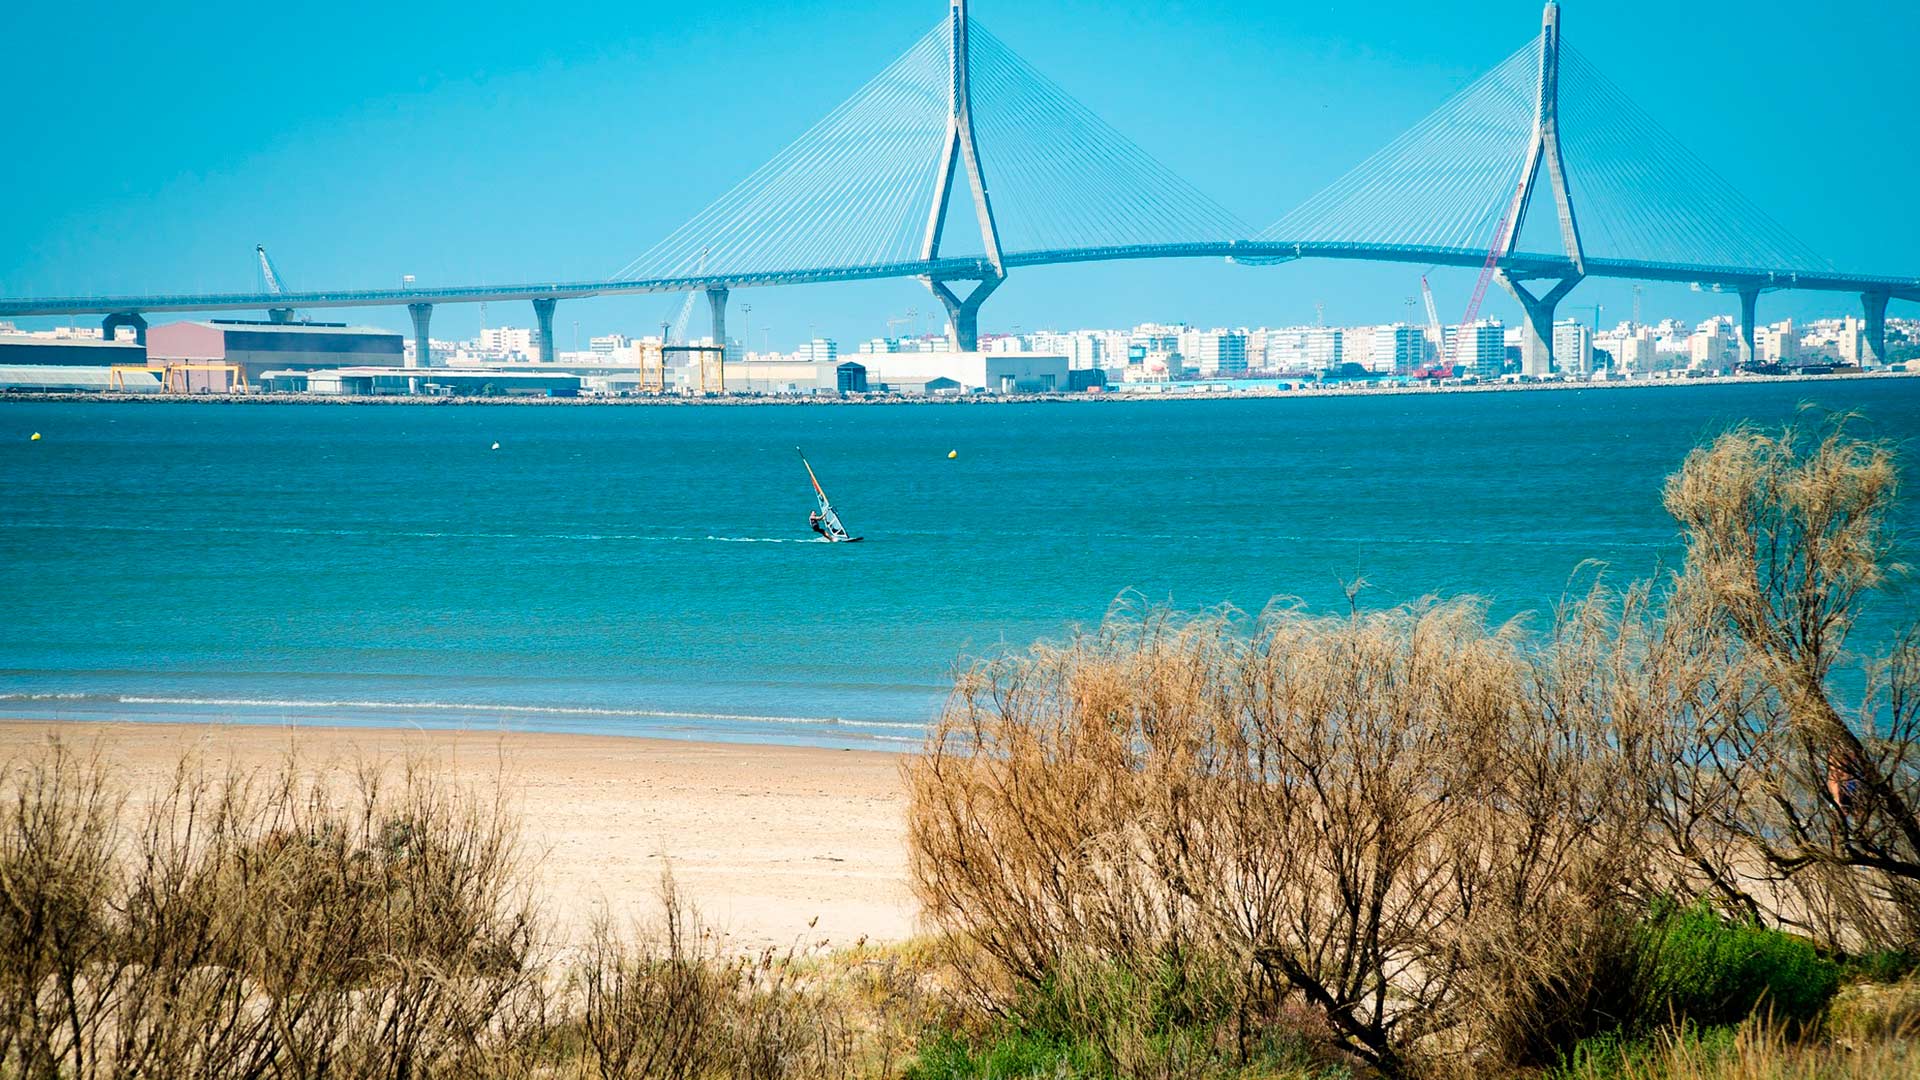 Una imagen espectacular del puente más imponente de Cádiz, de Andalucía